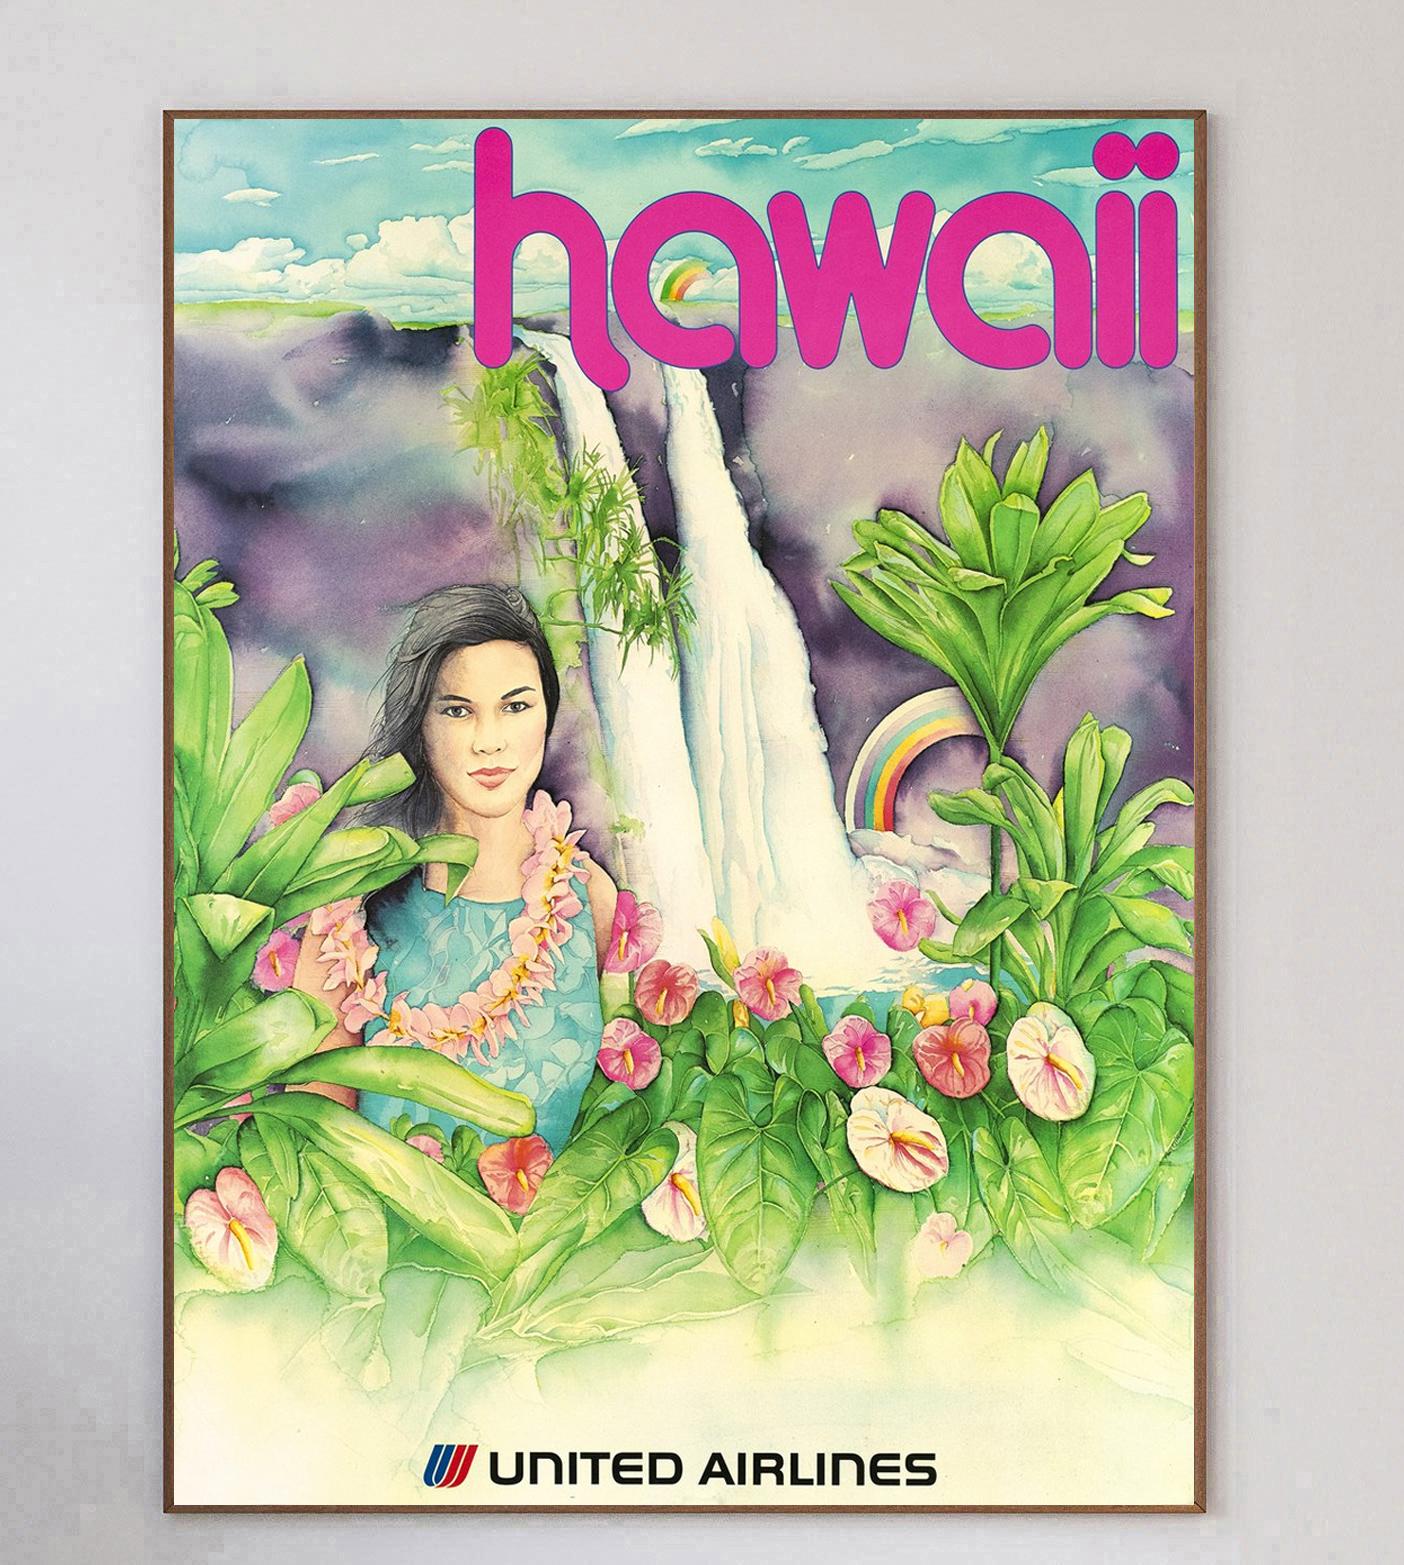 Avec une illustration brillante représentant une femme dans la nature devant une chute d'eau et un arc-en-ciel, cette superbe et rare affiche de 1970 fait la promotion des lignes United Airlines à destination d'Hawaï. Ce design coloré est en